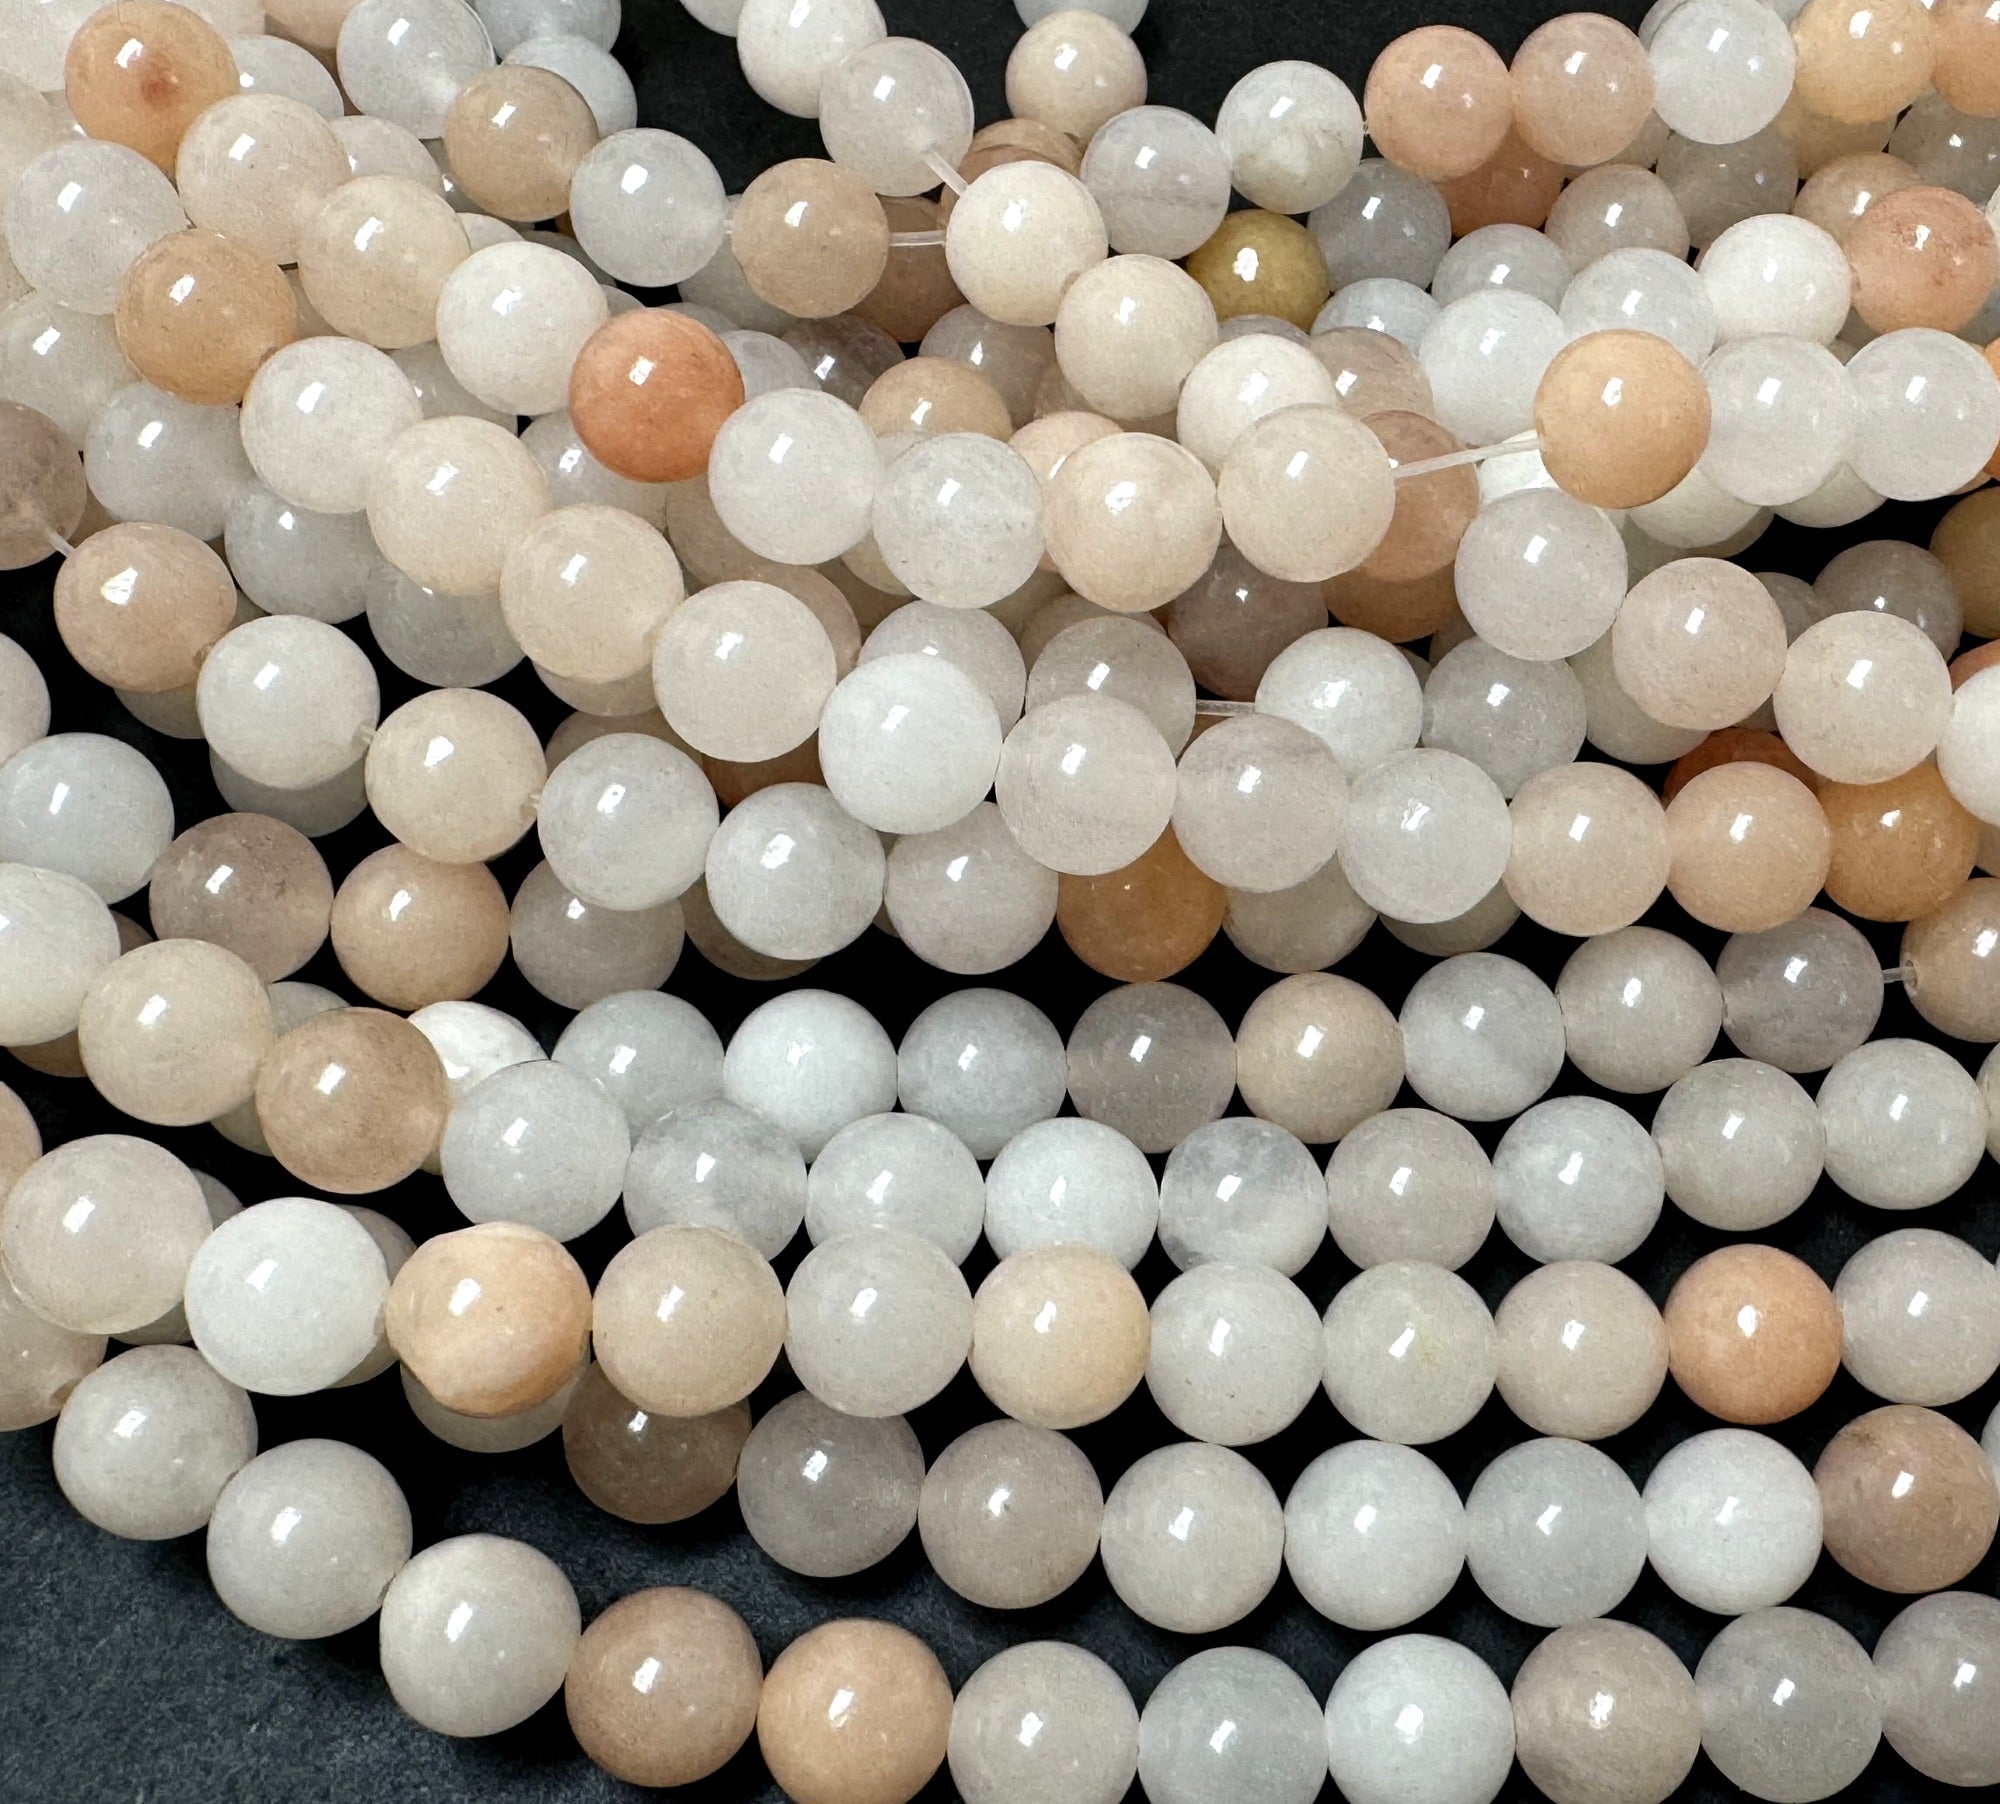 Pink Aventurine 8mm round natural gemstone beads 15" strand - Oz Beads 